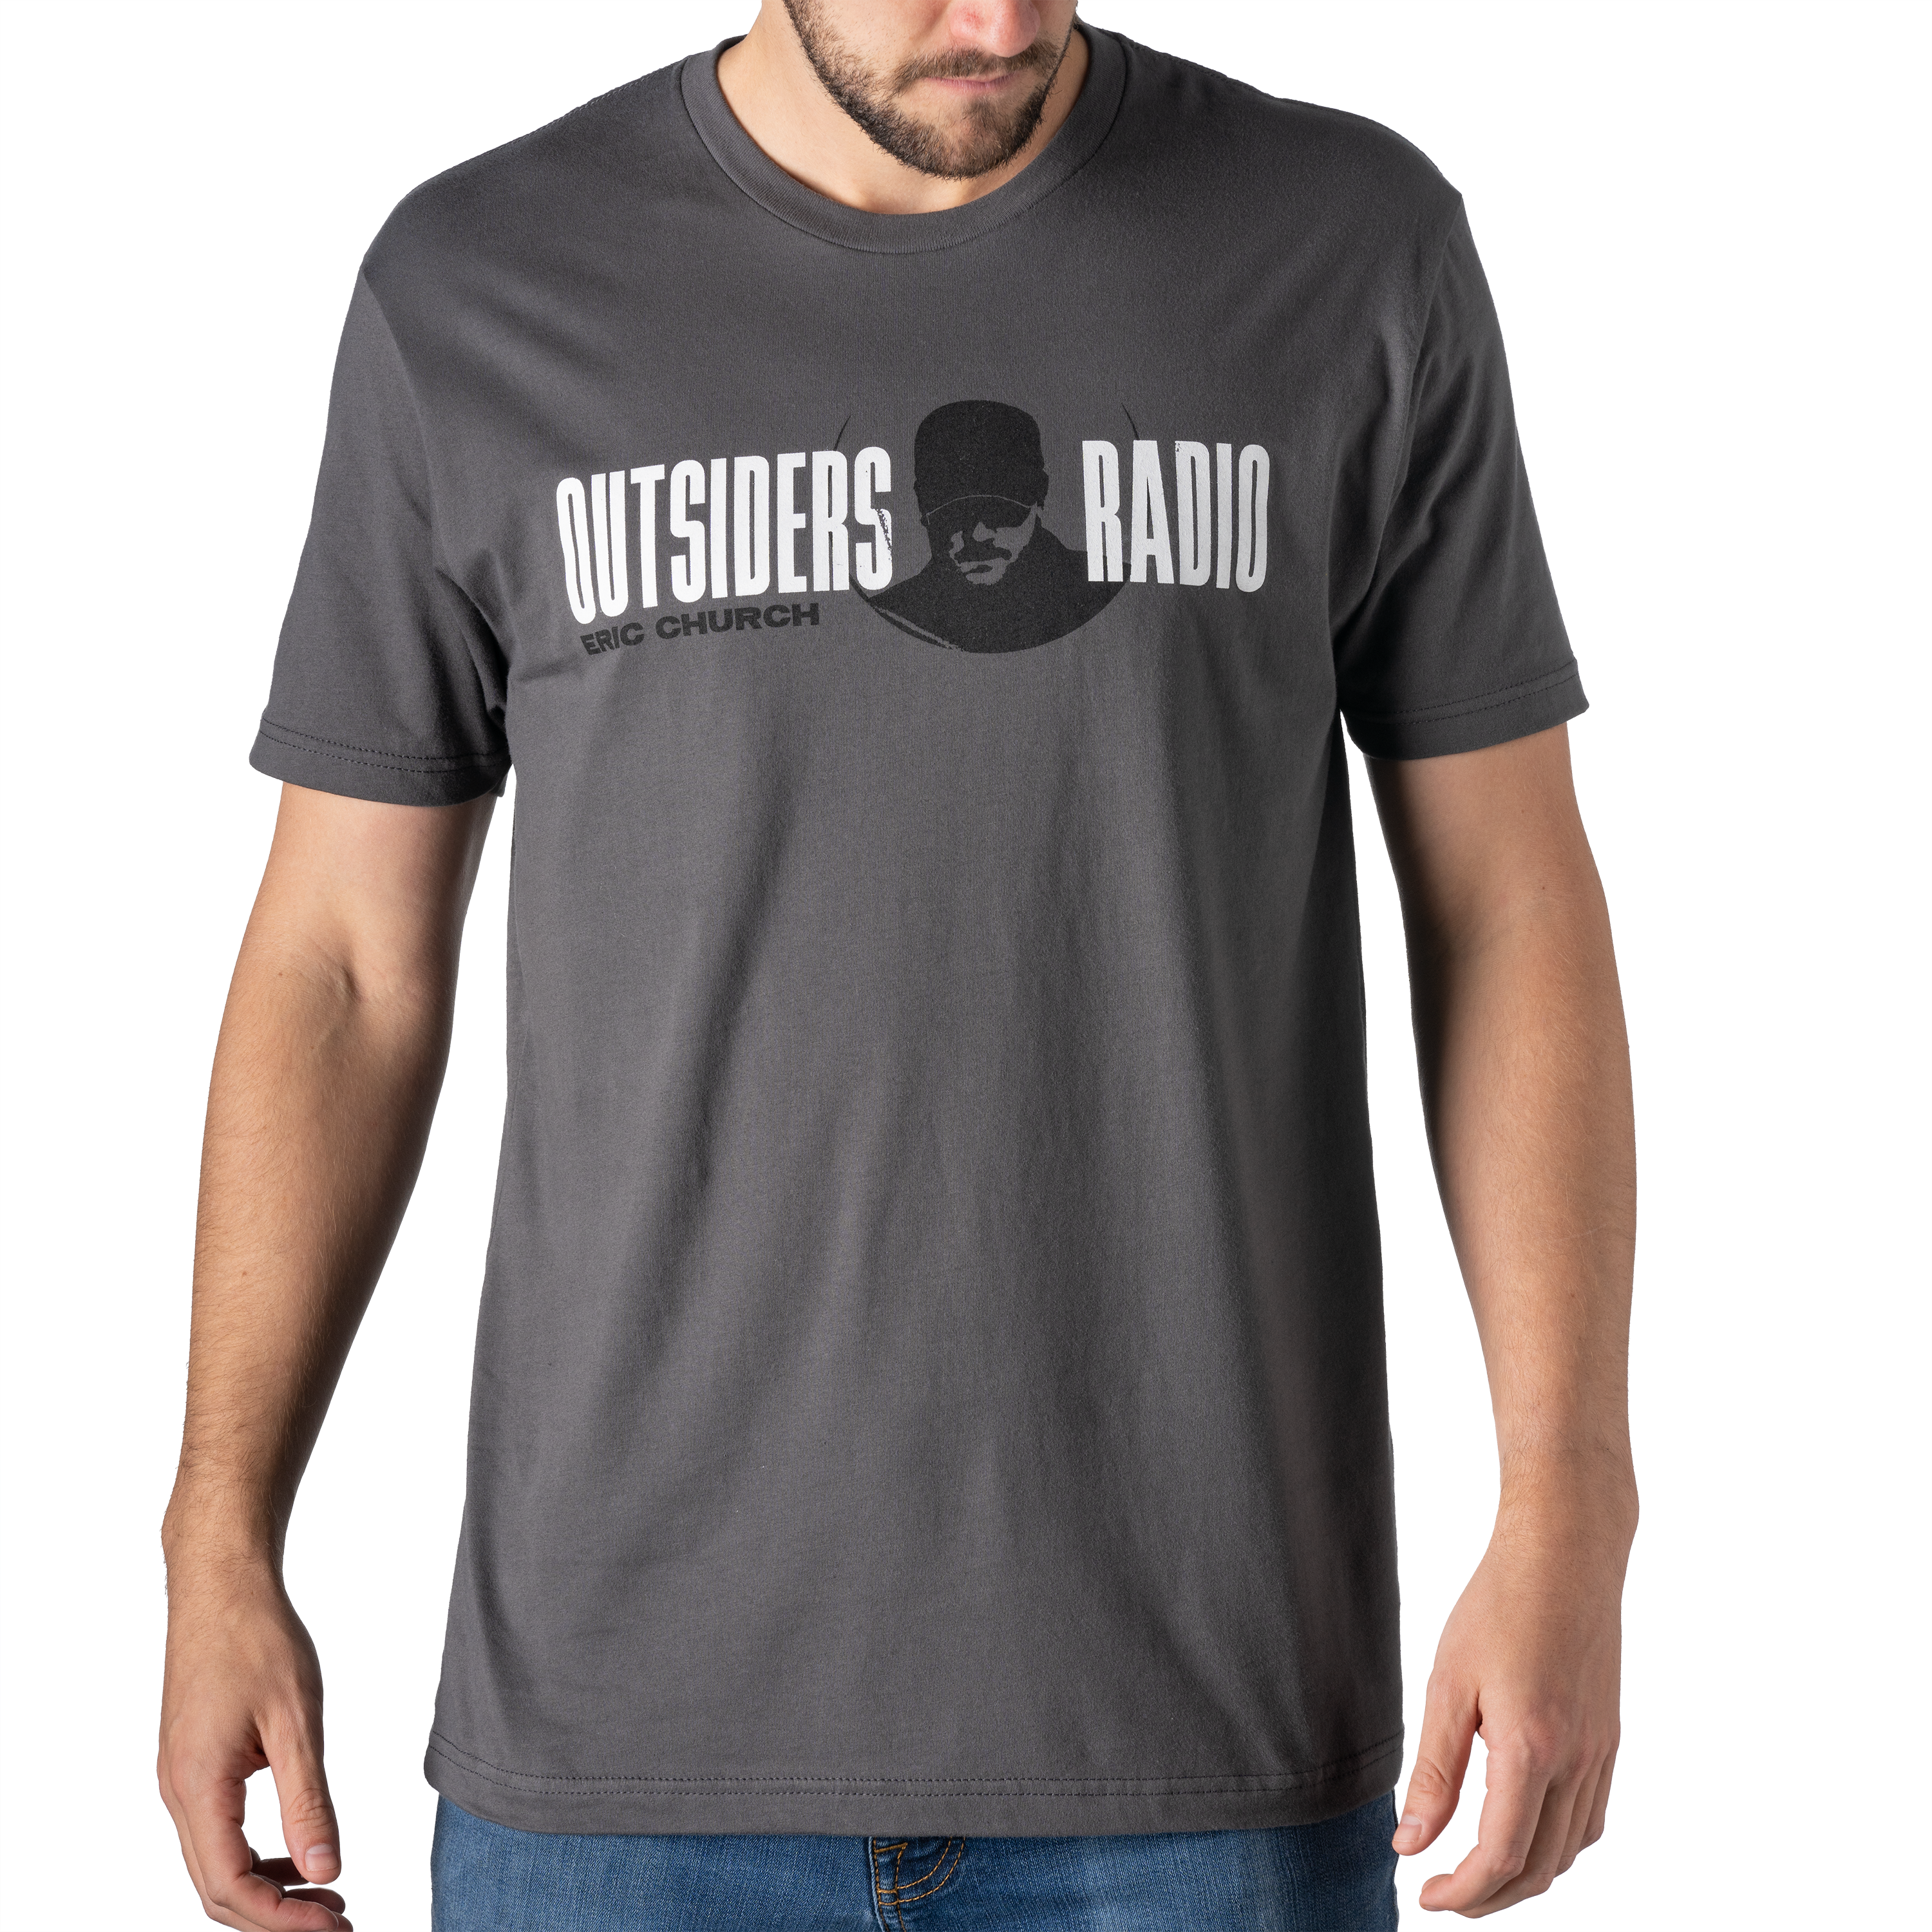 Outsiders Radio Bluetooth Speaker - Black